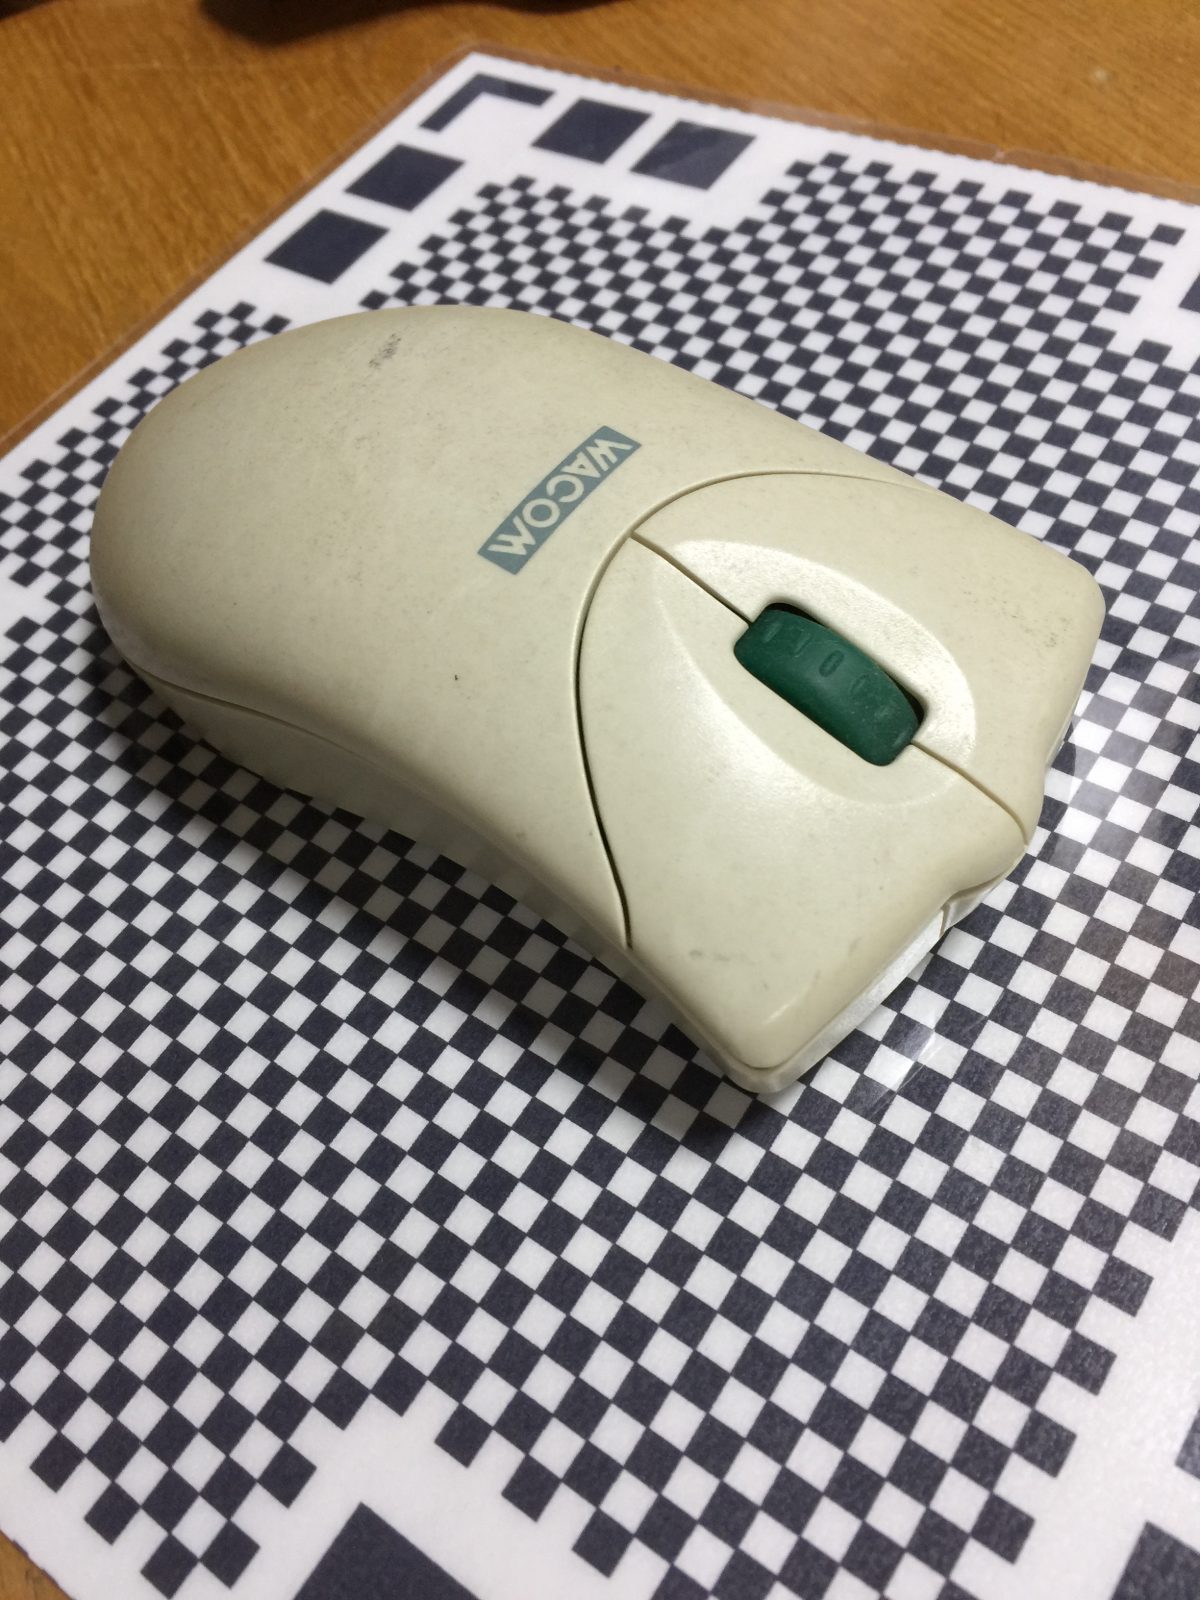 ワコム・ペンタブレットに付属のマウスを分解する – ID1384 [2019/08/19]